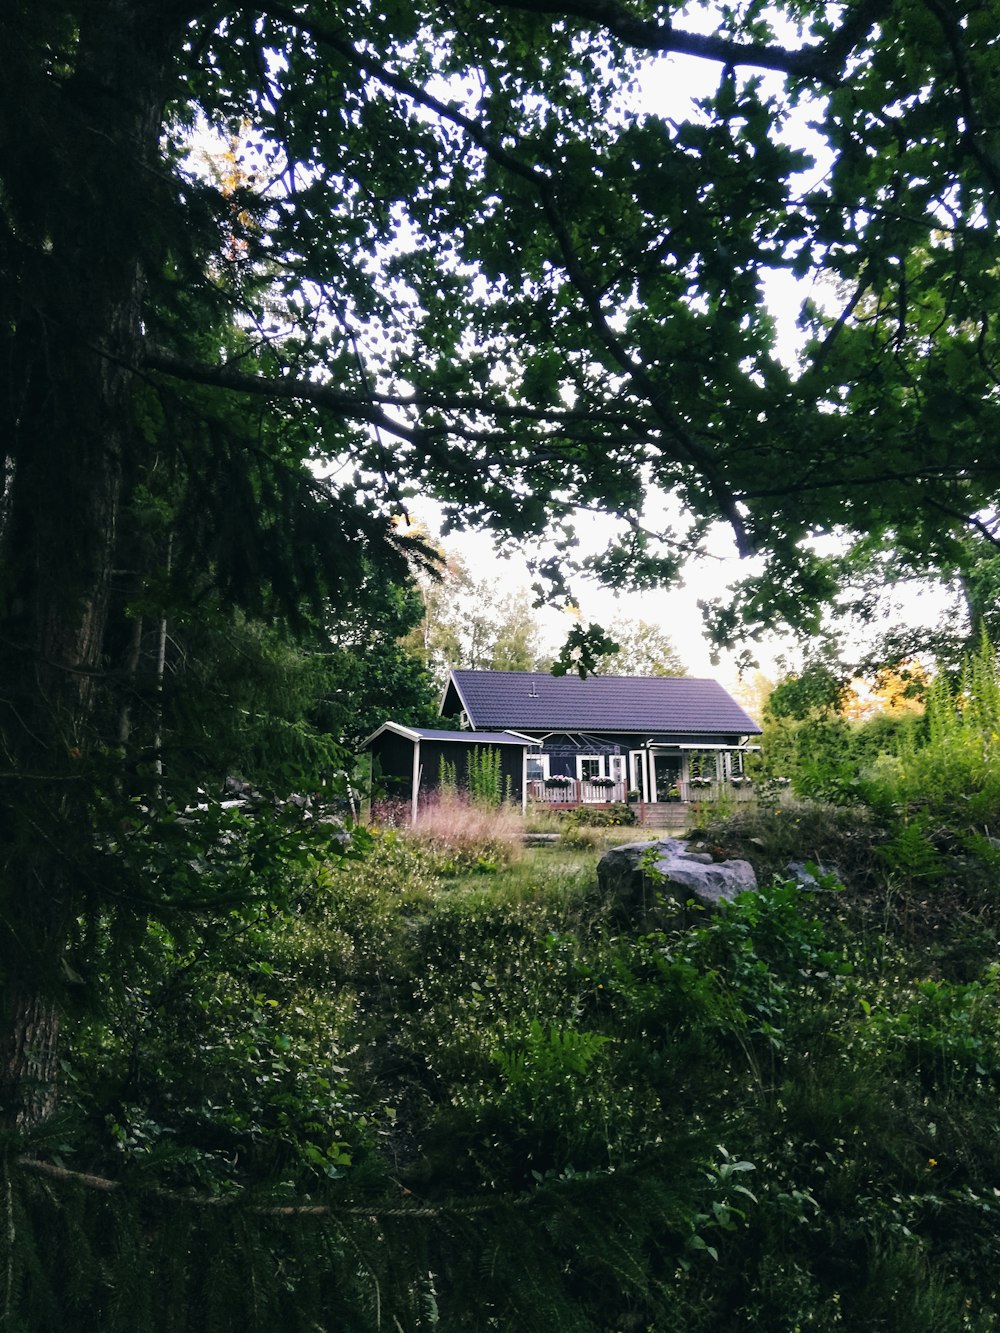 casa de madeira marrom cercada por árvores verdes durante o dia